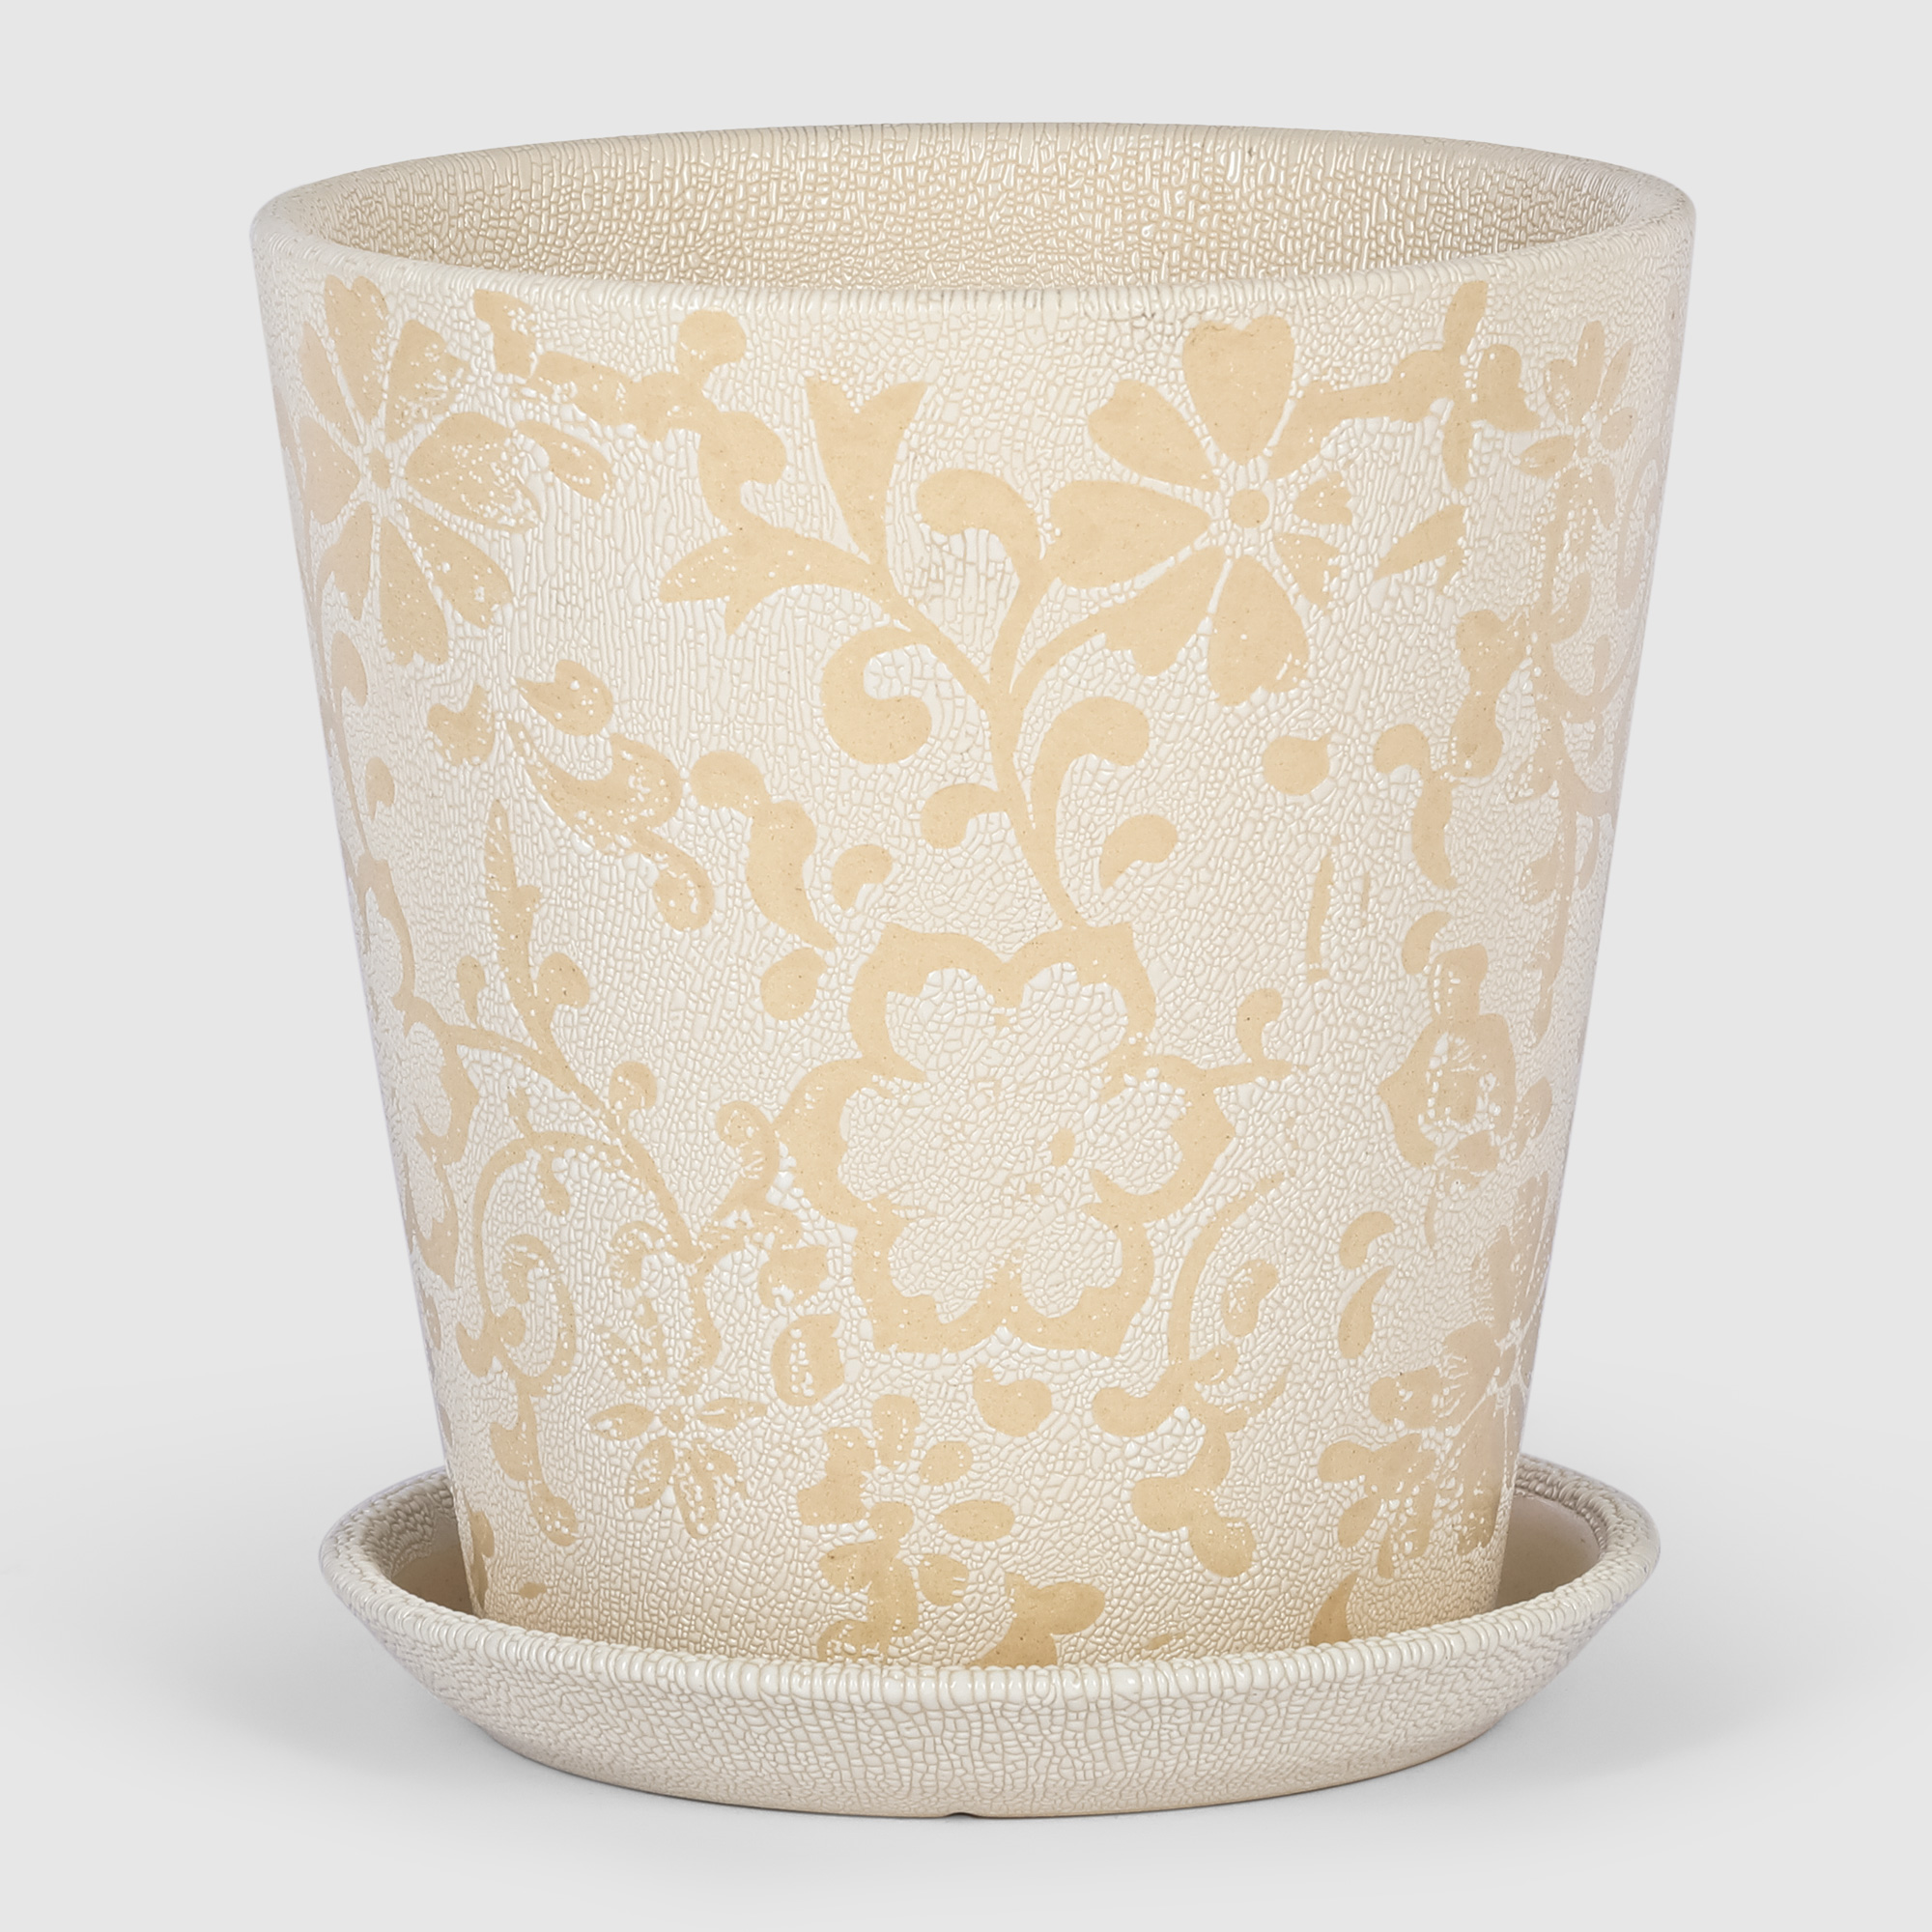 Кашпо керамическое для цветов Shine Pots 16x17см белый+узор кашпо керамическое для ов shine pots 20x20см бежевое полосатое